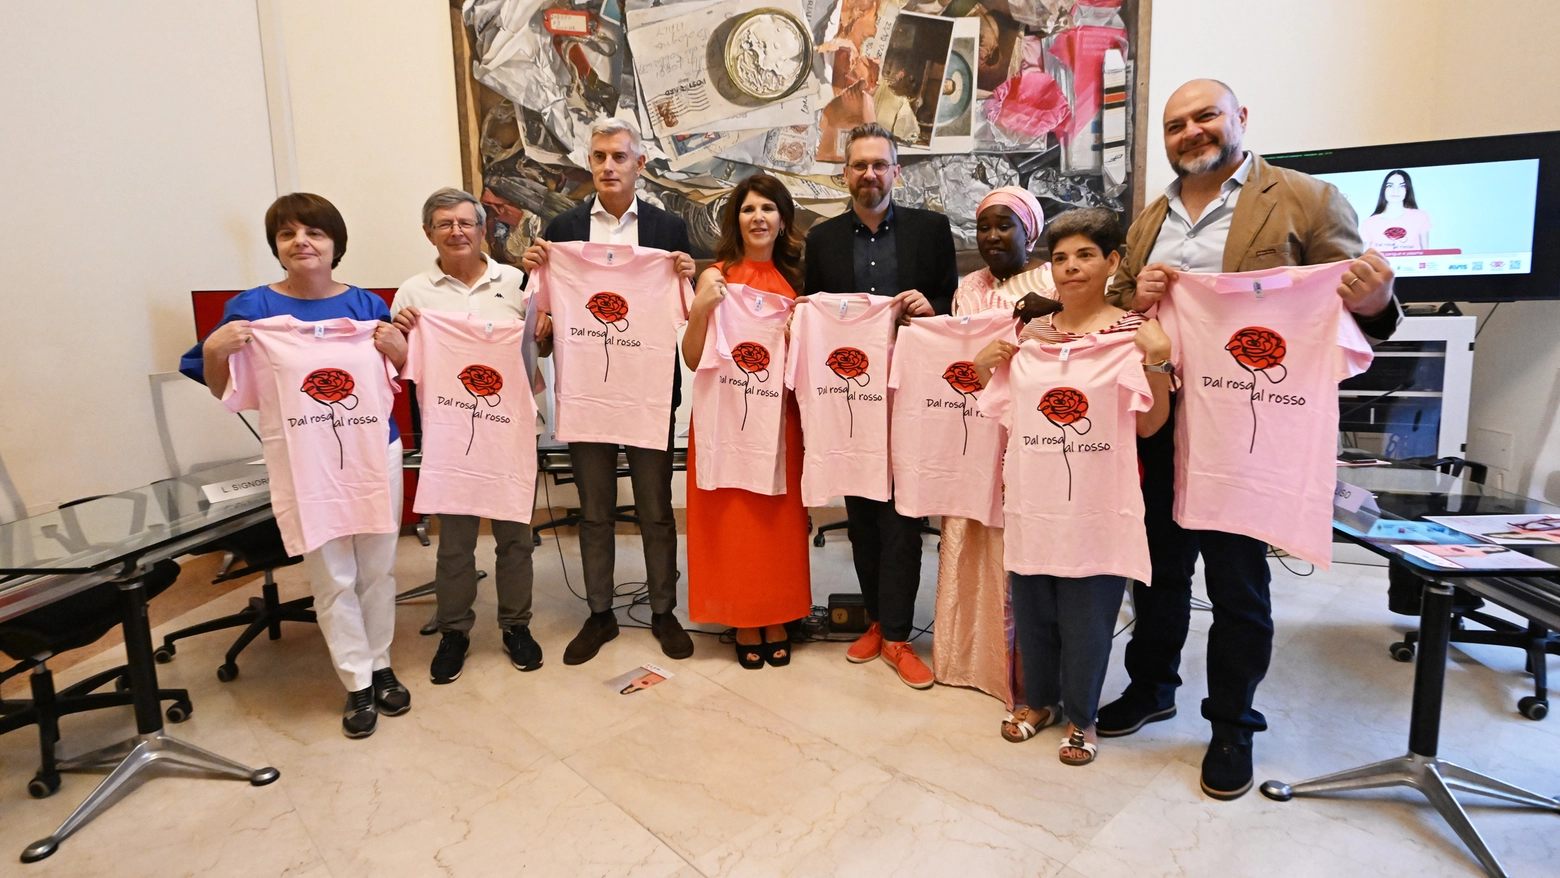 La conferenza stampa sulla campagna promozionale della donazione di sangue e plasma (foto Schicchi)